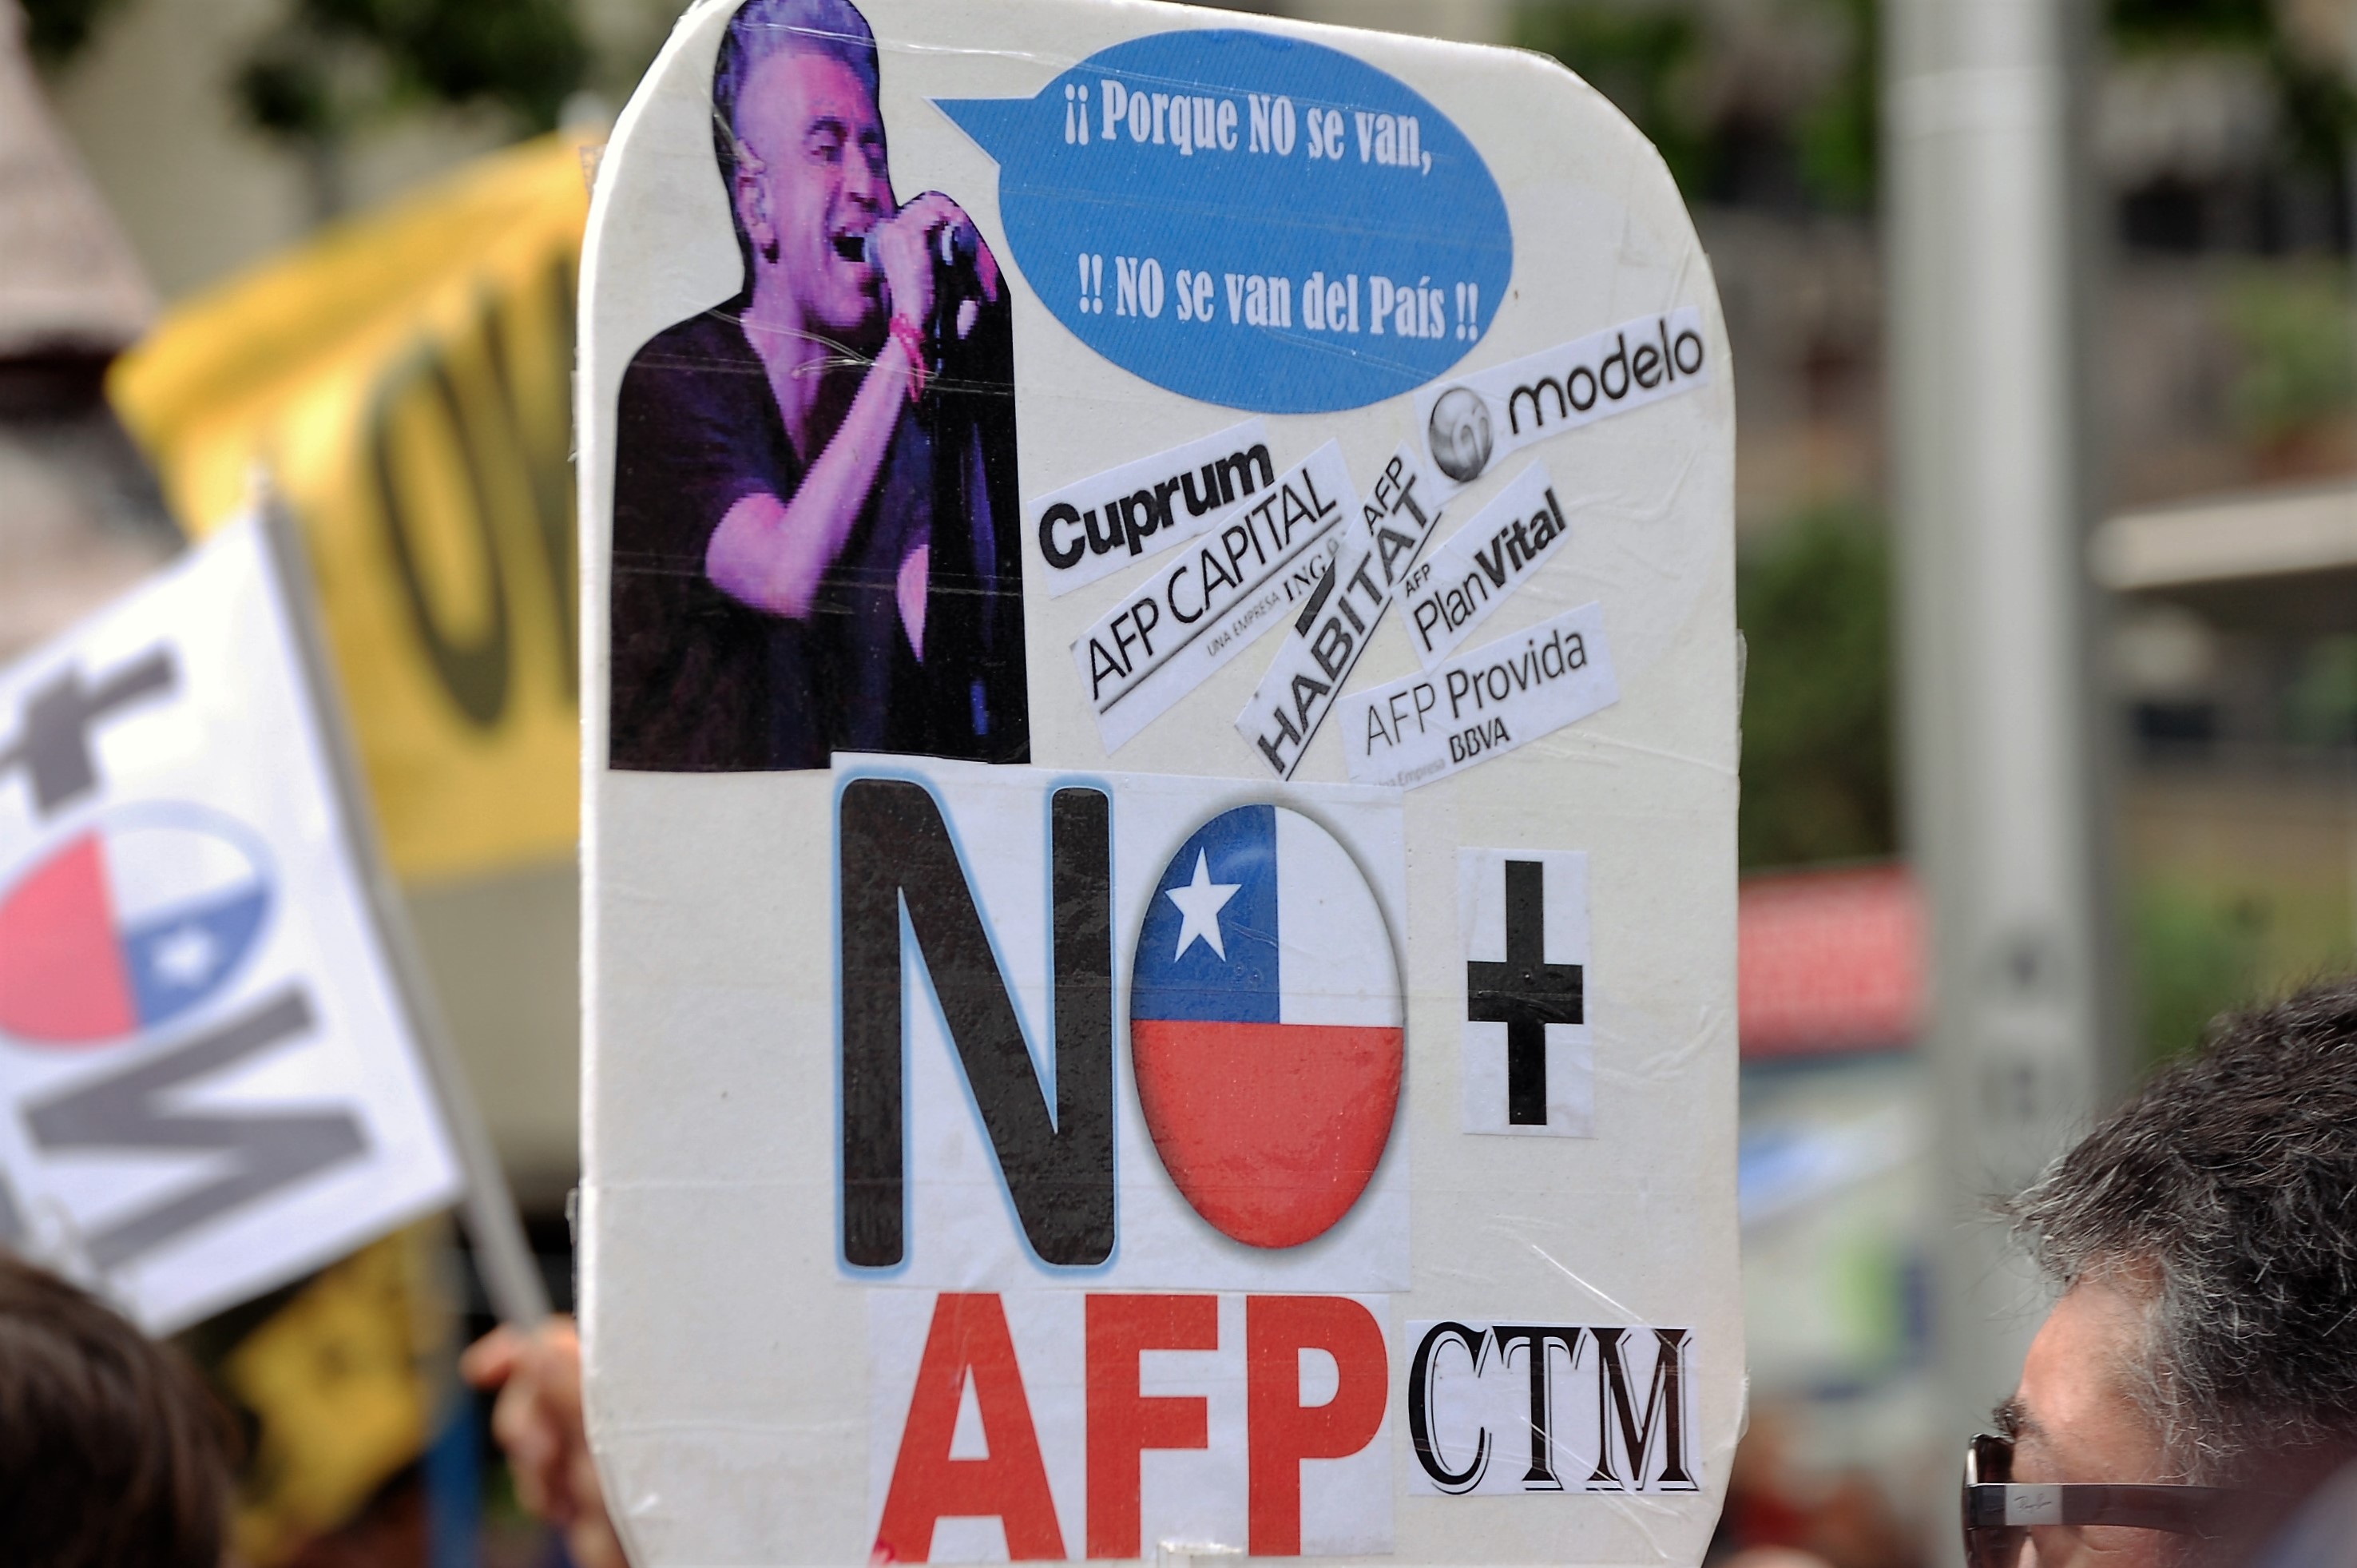 Chile Mejor Sin TPP llama a defender soberanía y sumarse a protesta contra las AFP